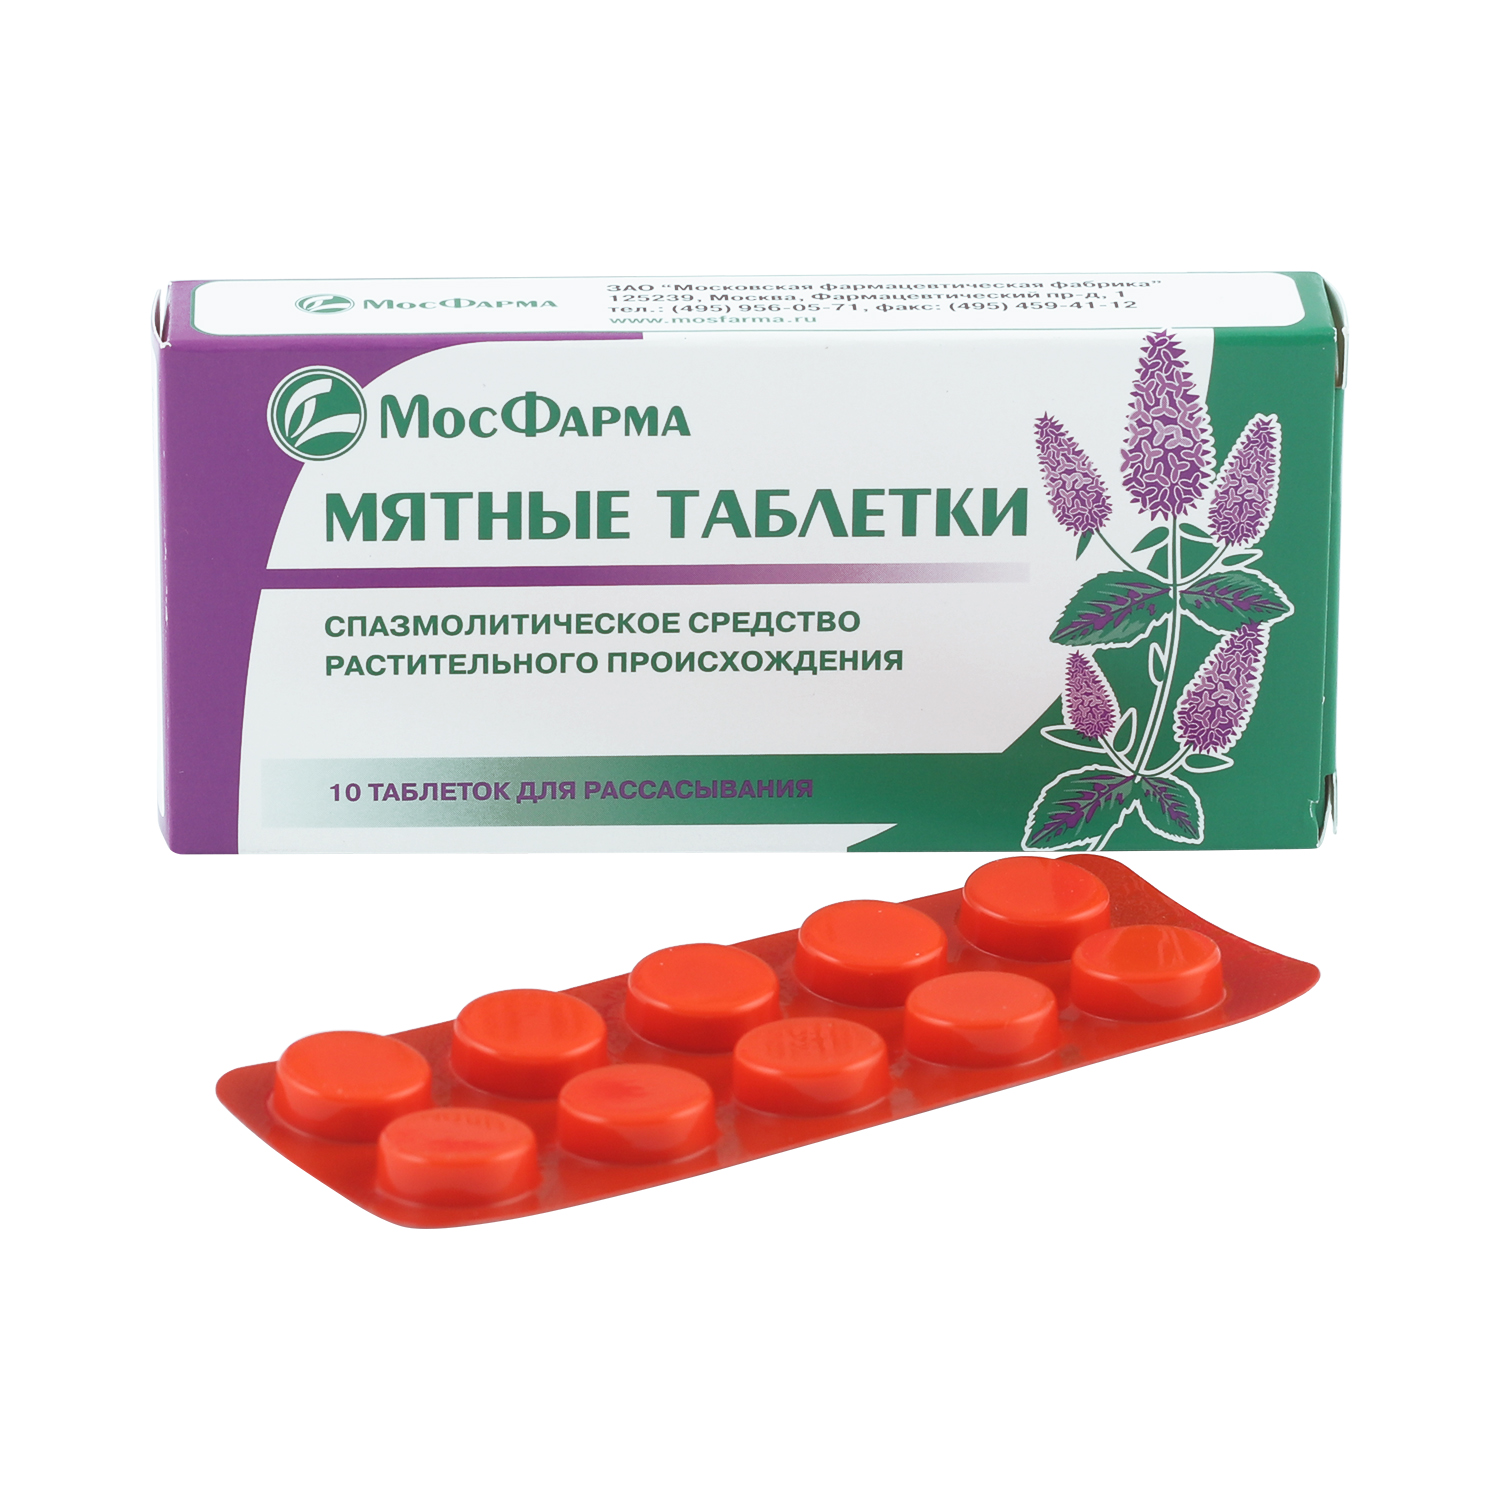 Мятные таблетки купить. Мятные таблетки Московская фармацевтическая фабрика. Мятные таблетки Вифитех. Мятные таблетки МОСФАРМА. Мятные таблетки для горла.